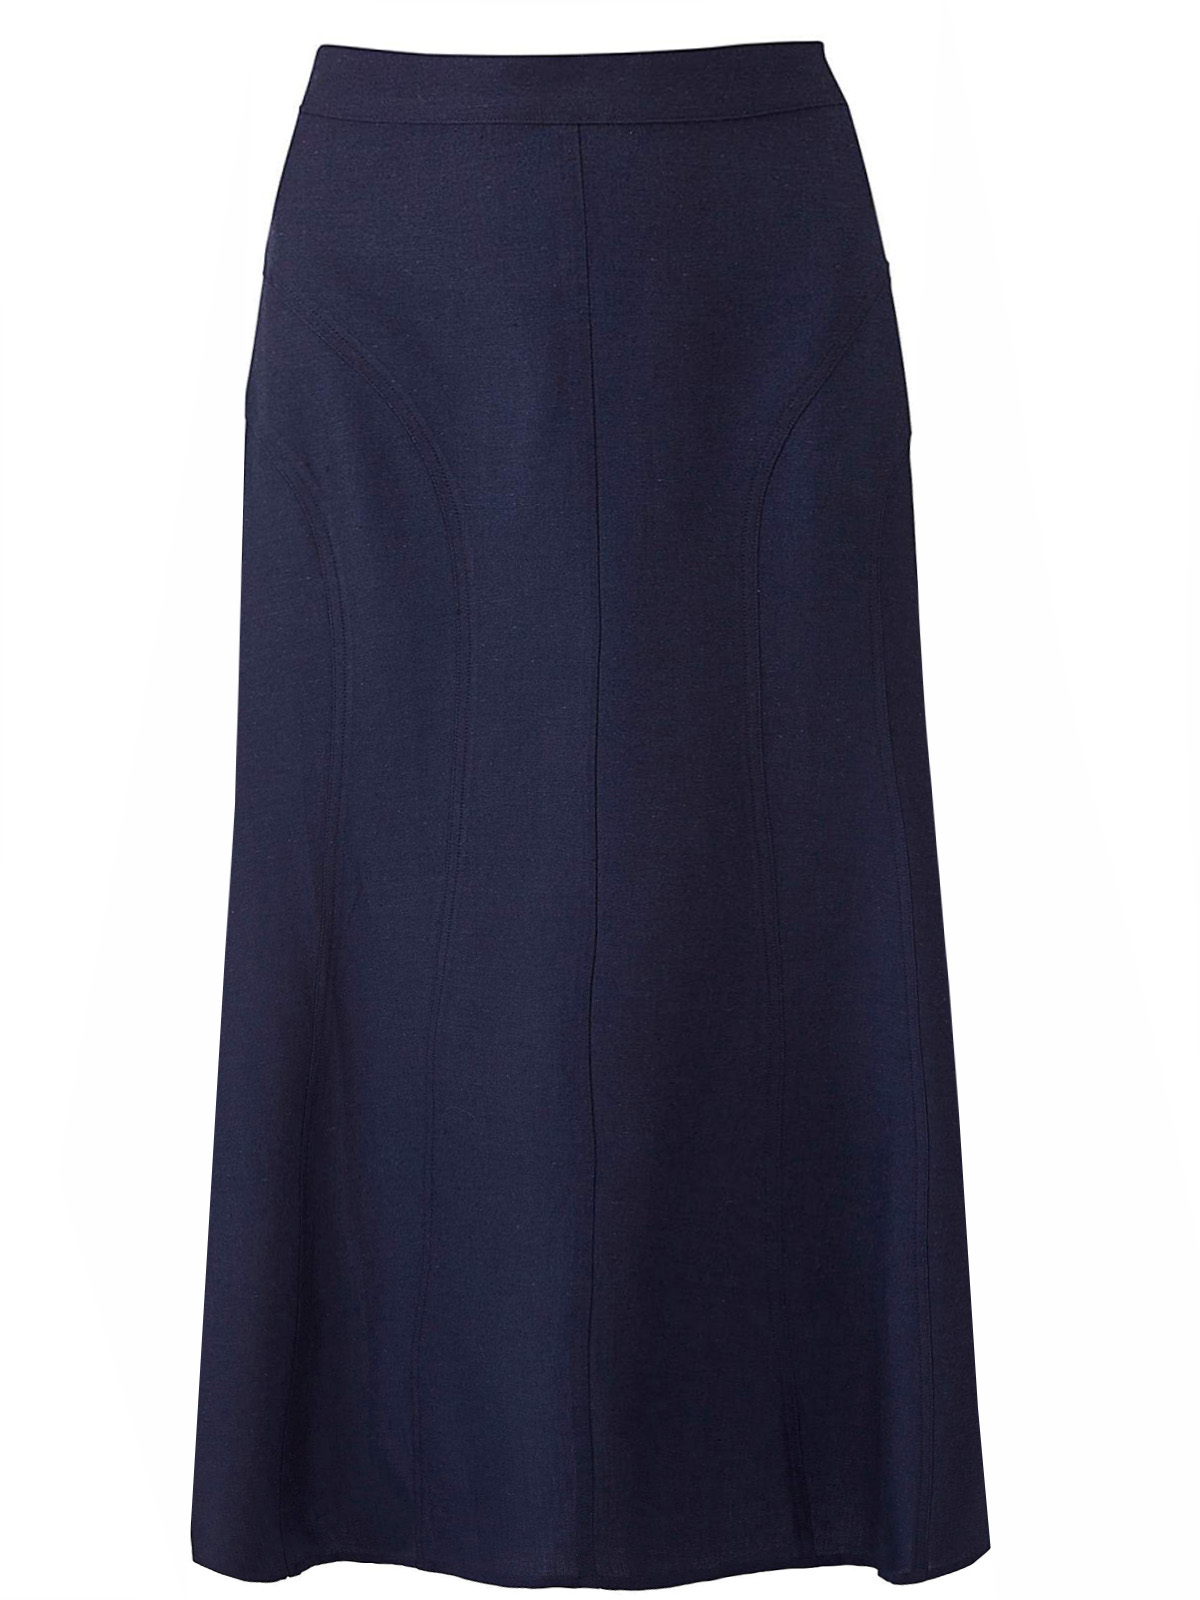 Julipa - - Julipa NAVY Linen Blend Pull On Skirt - Plus Size 12 to 28